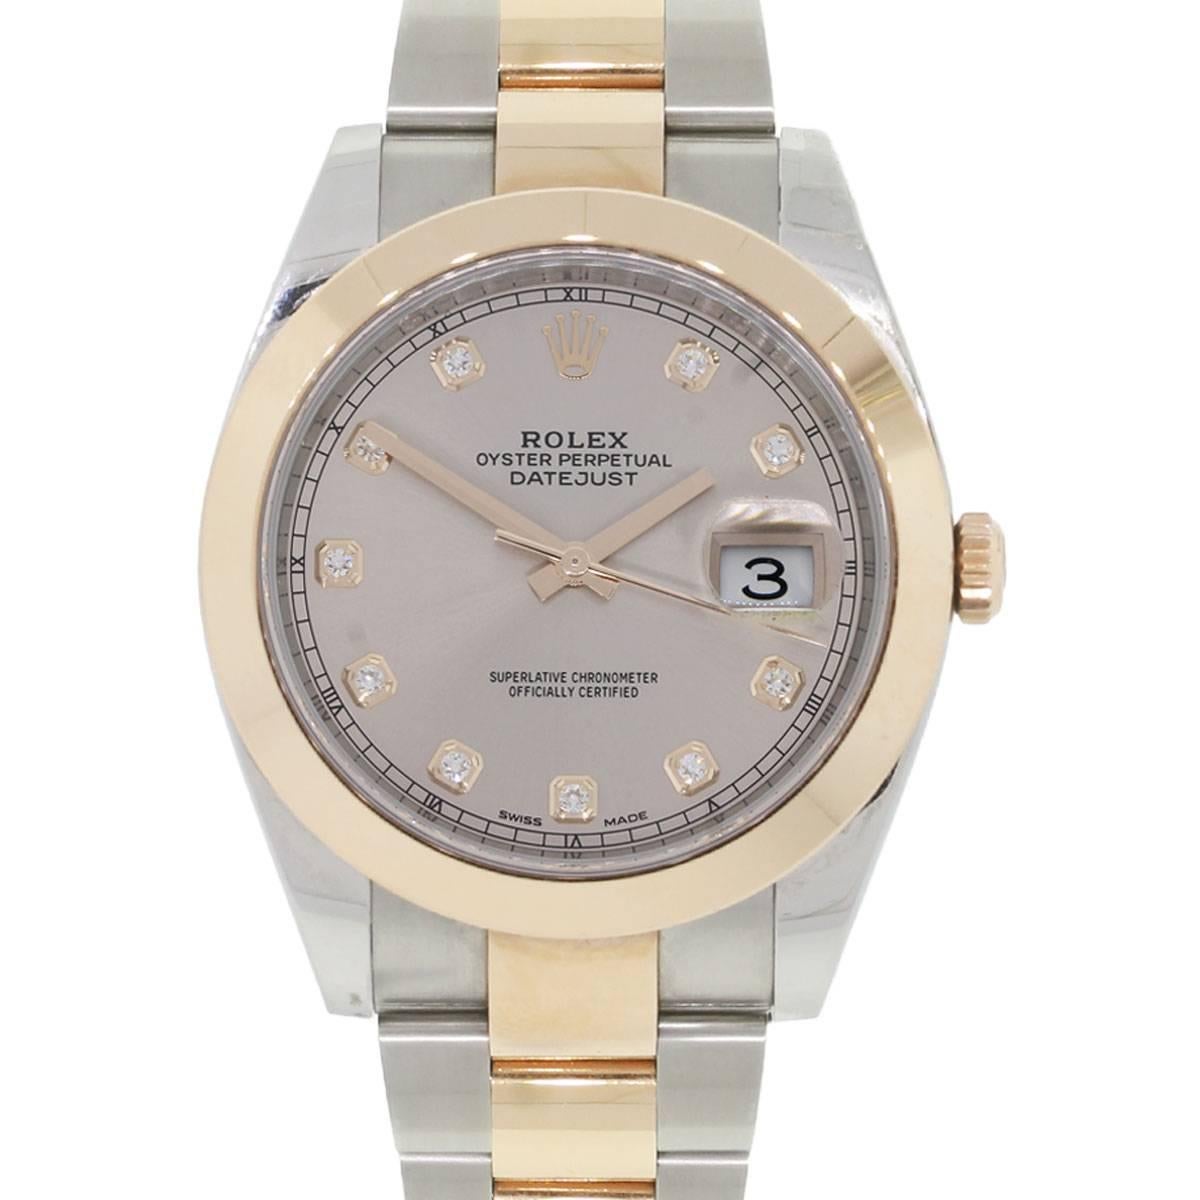 Rolex 126301 Datejust II Two-Tone Diamond Dial Wristwatch